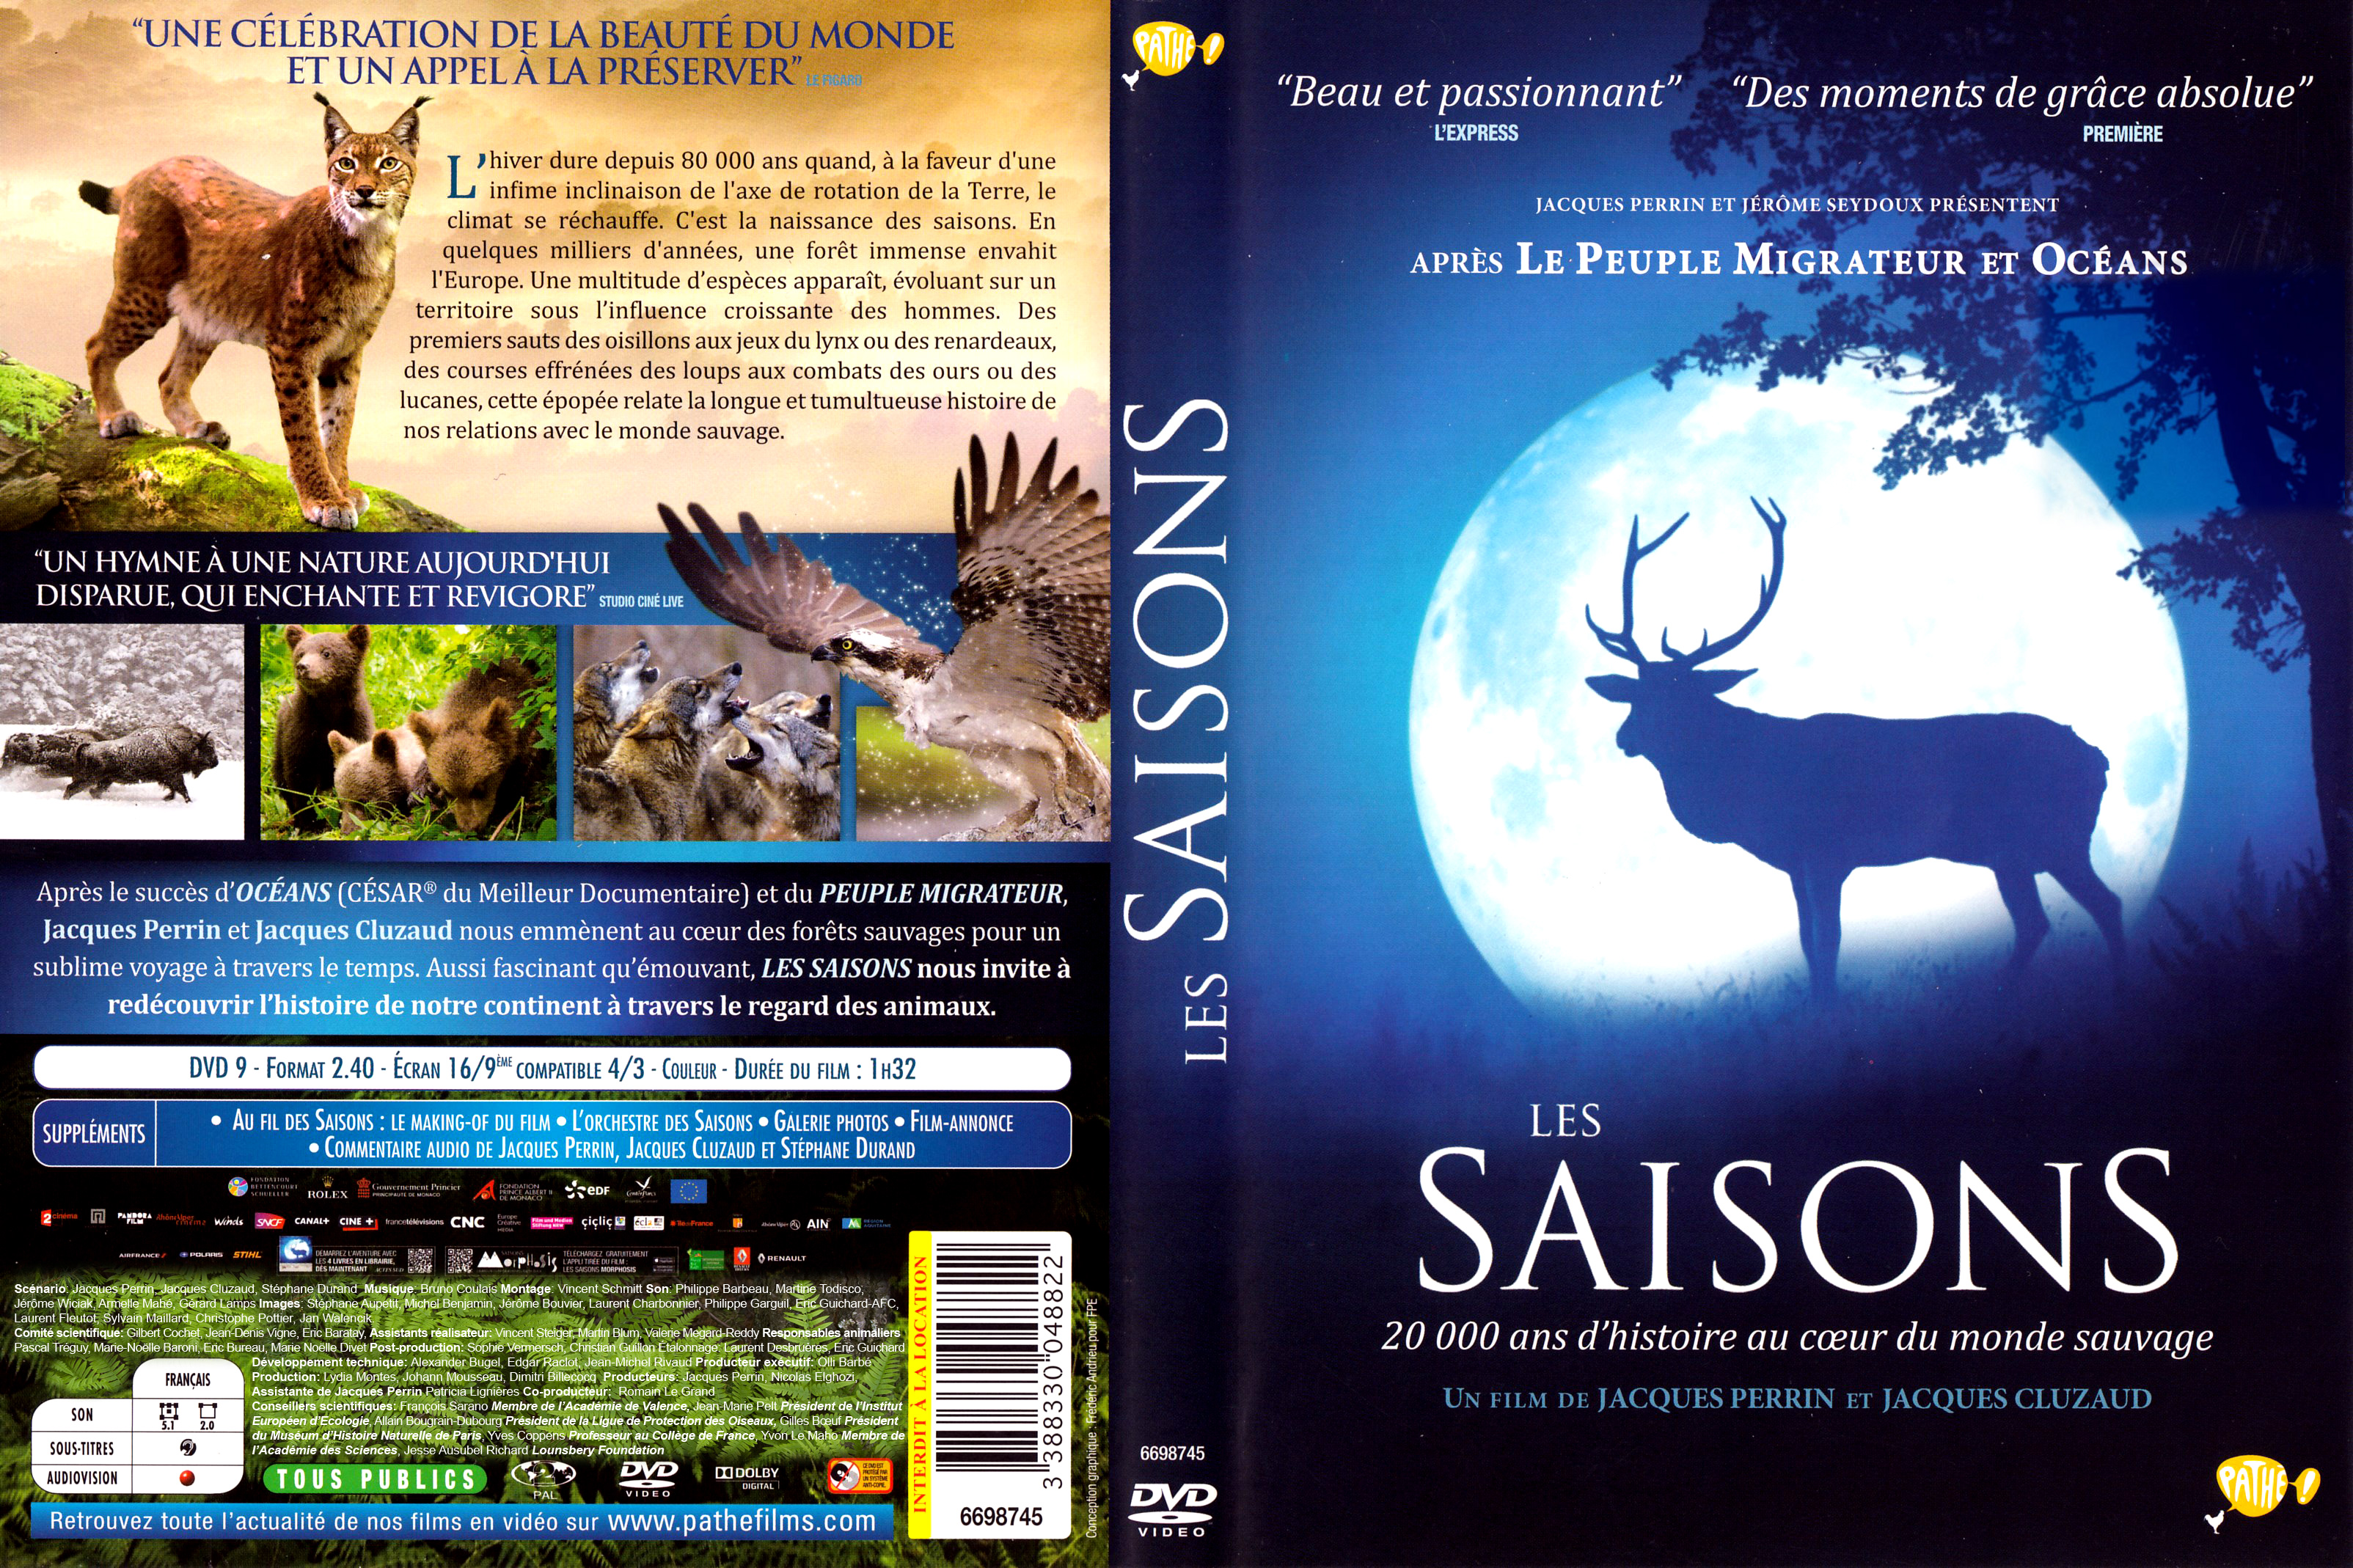 Jaquette DVD Les saisons